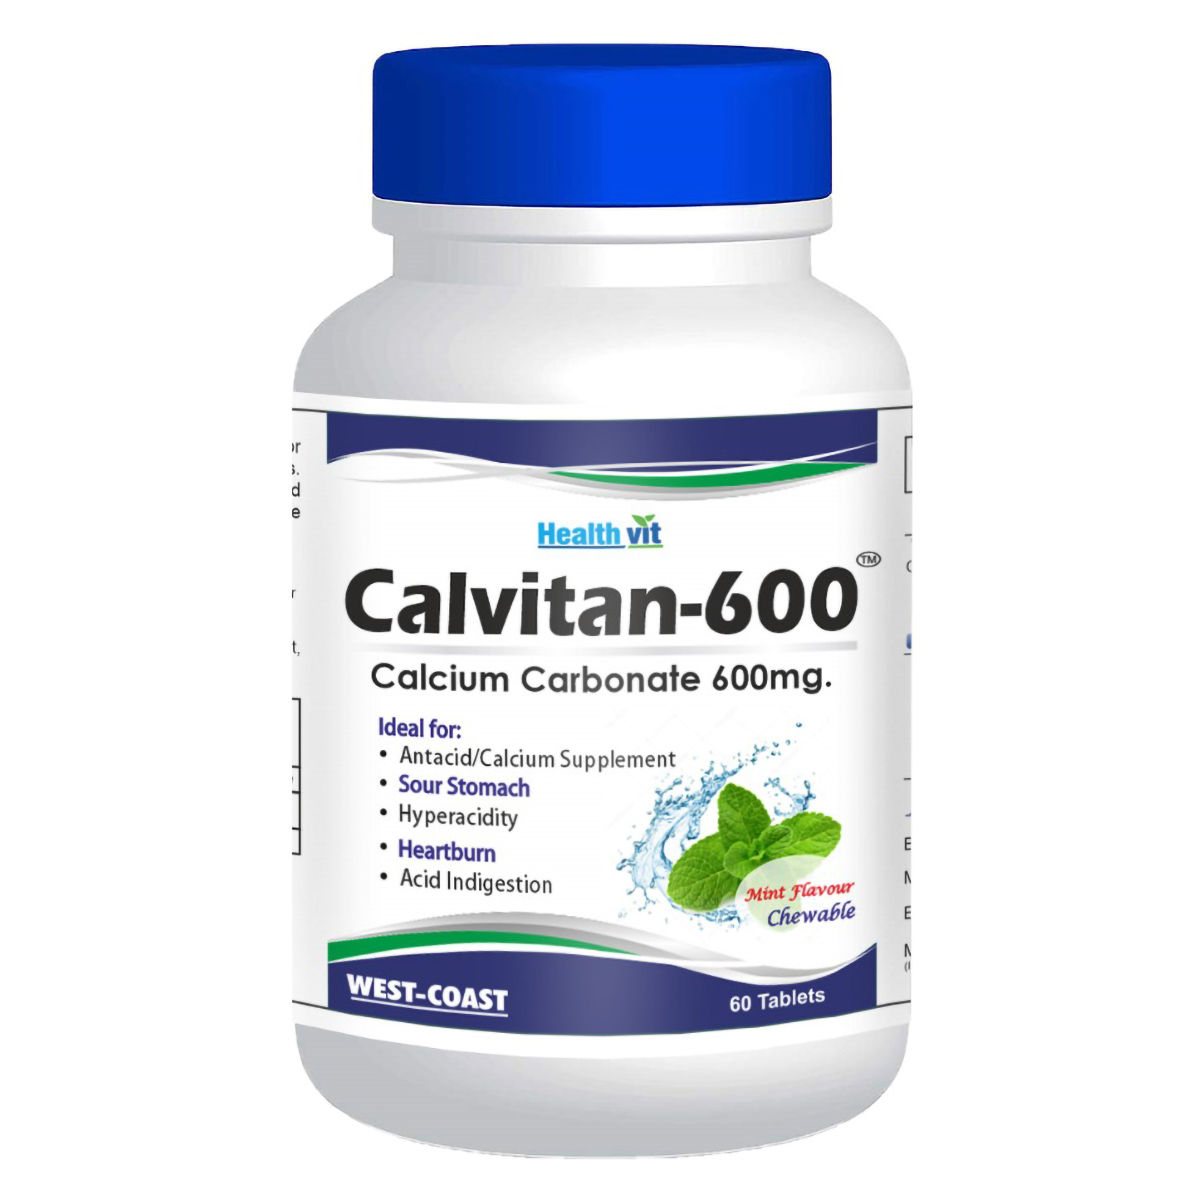 Buy Healthvit Calvitan-600 Calcium Carbonate 600 mg Mint Flavour Chewable, 60 Tablets Online